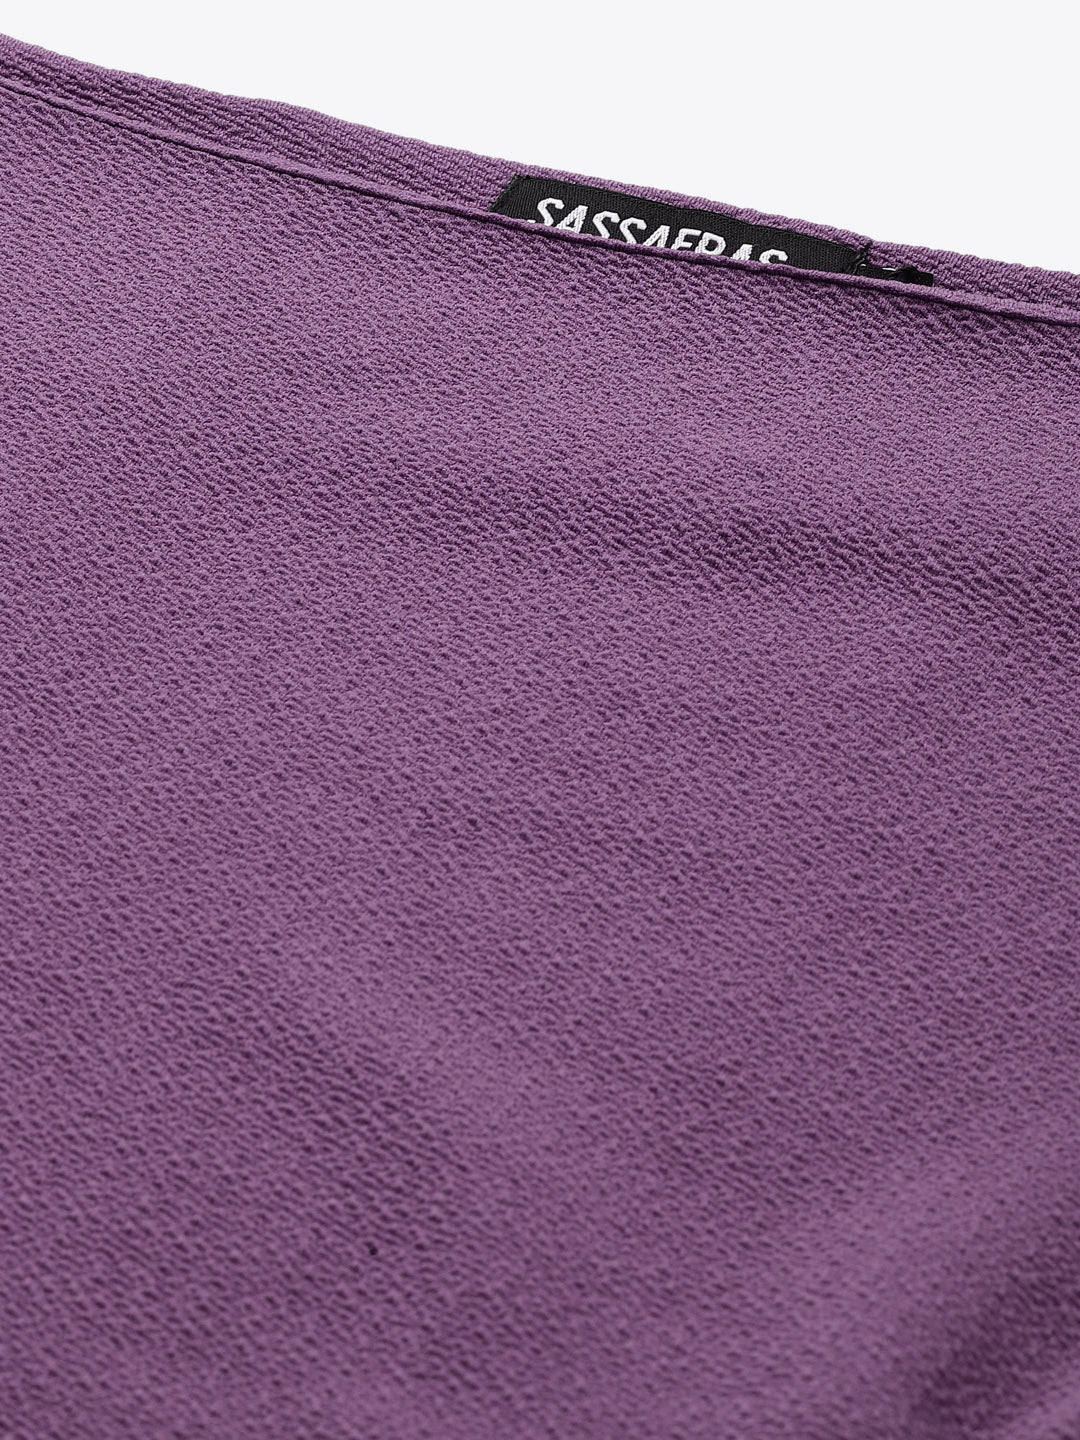 Lavender Belted Drop Shoulder Midi Dress